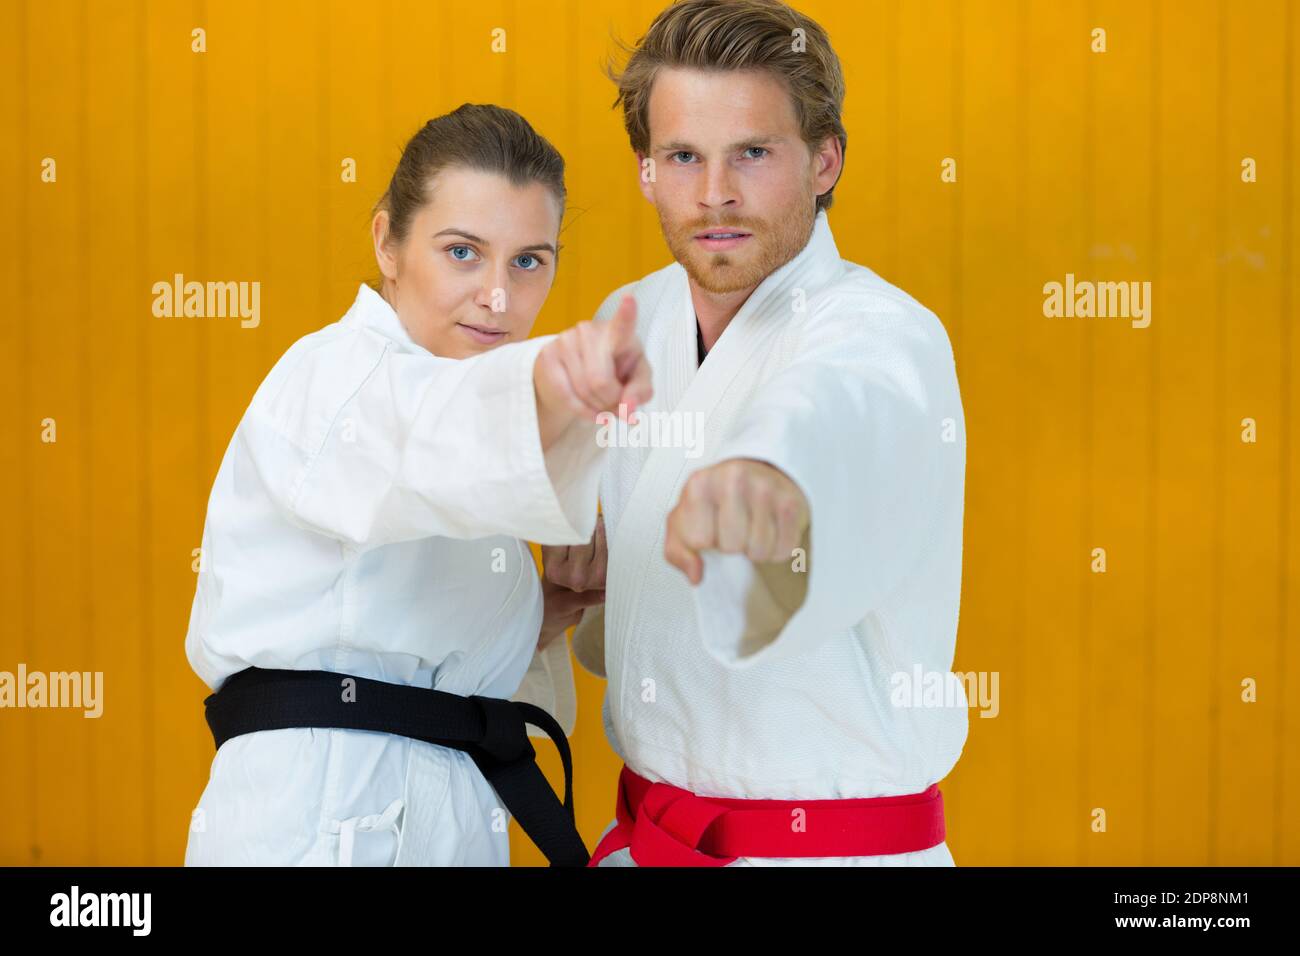 les deux judokas combattants posant Banque D'Images